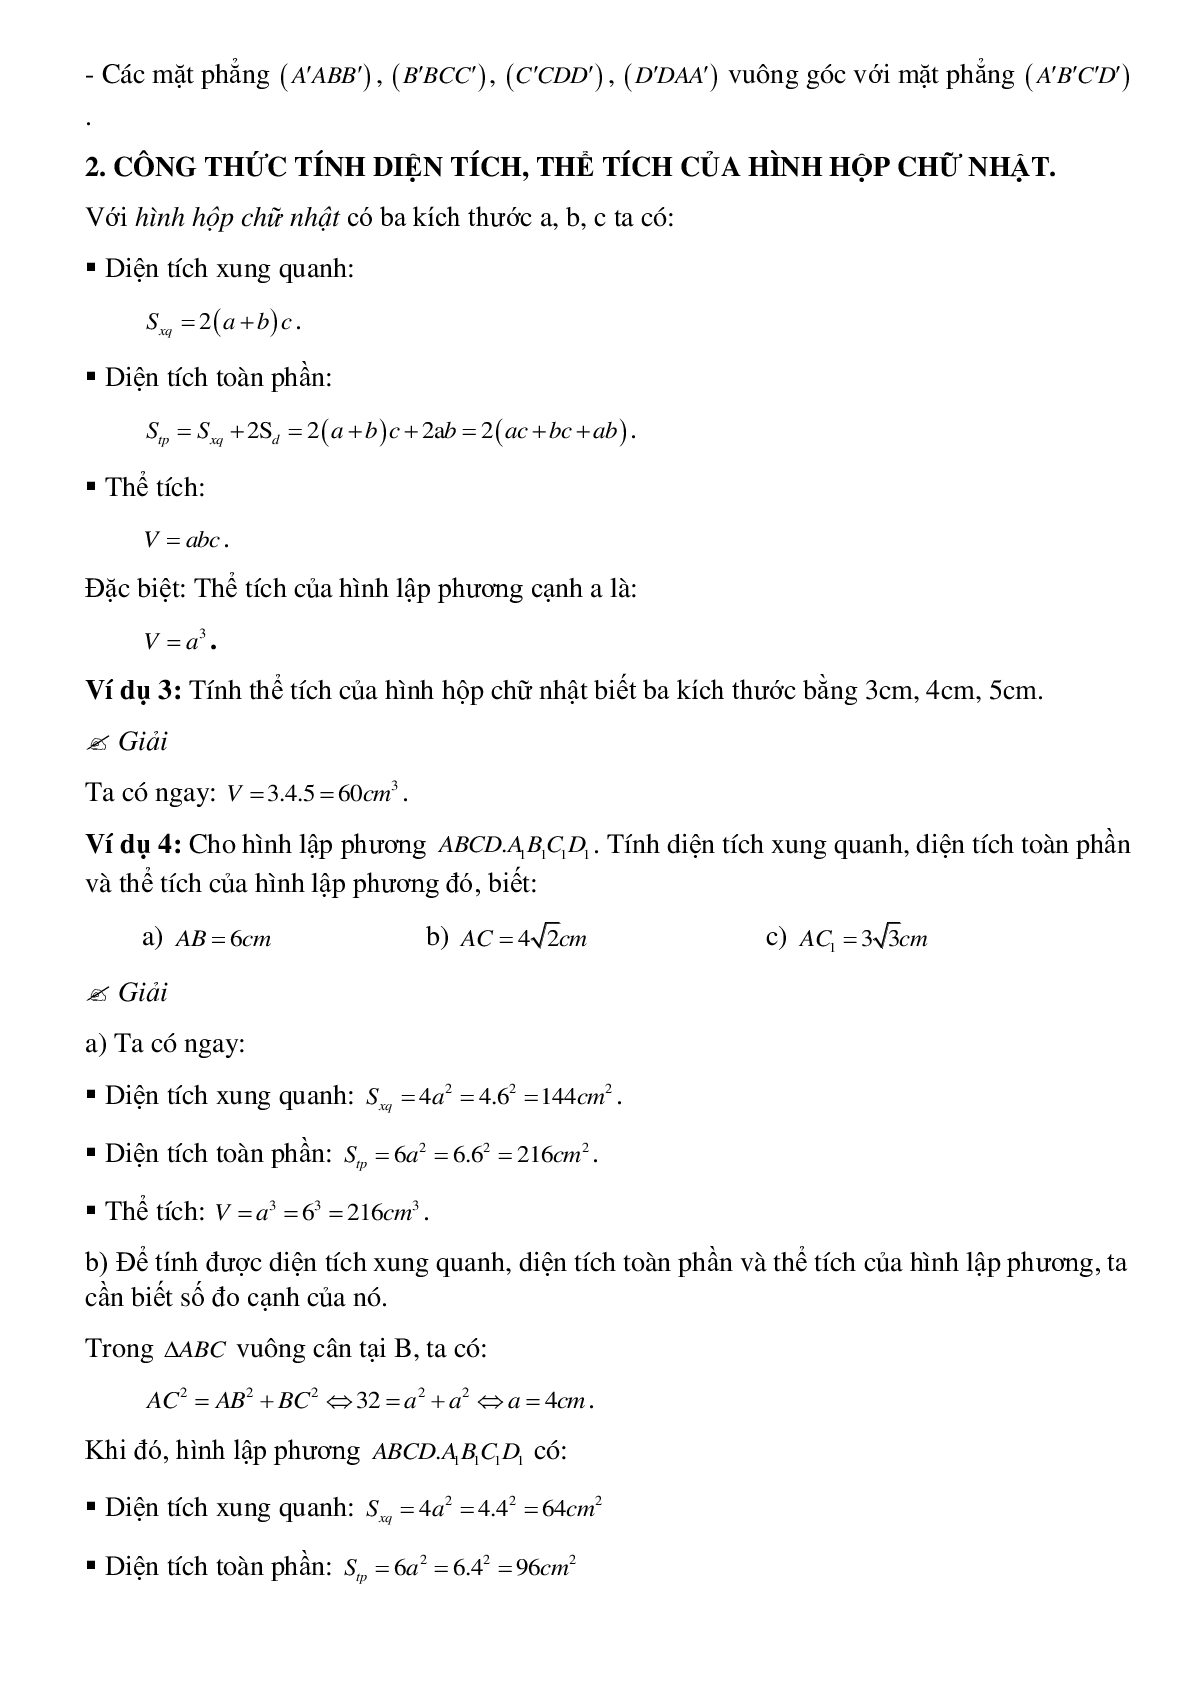 Tổng hợp các dạng toán thường gặp về Thể tích của hình hộp chữ nhật có lời giải (trang 2)